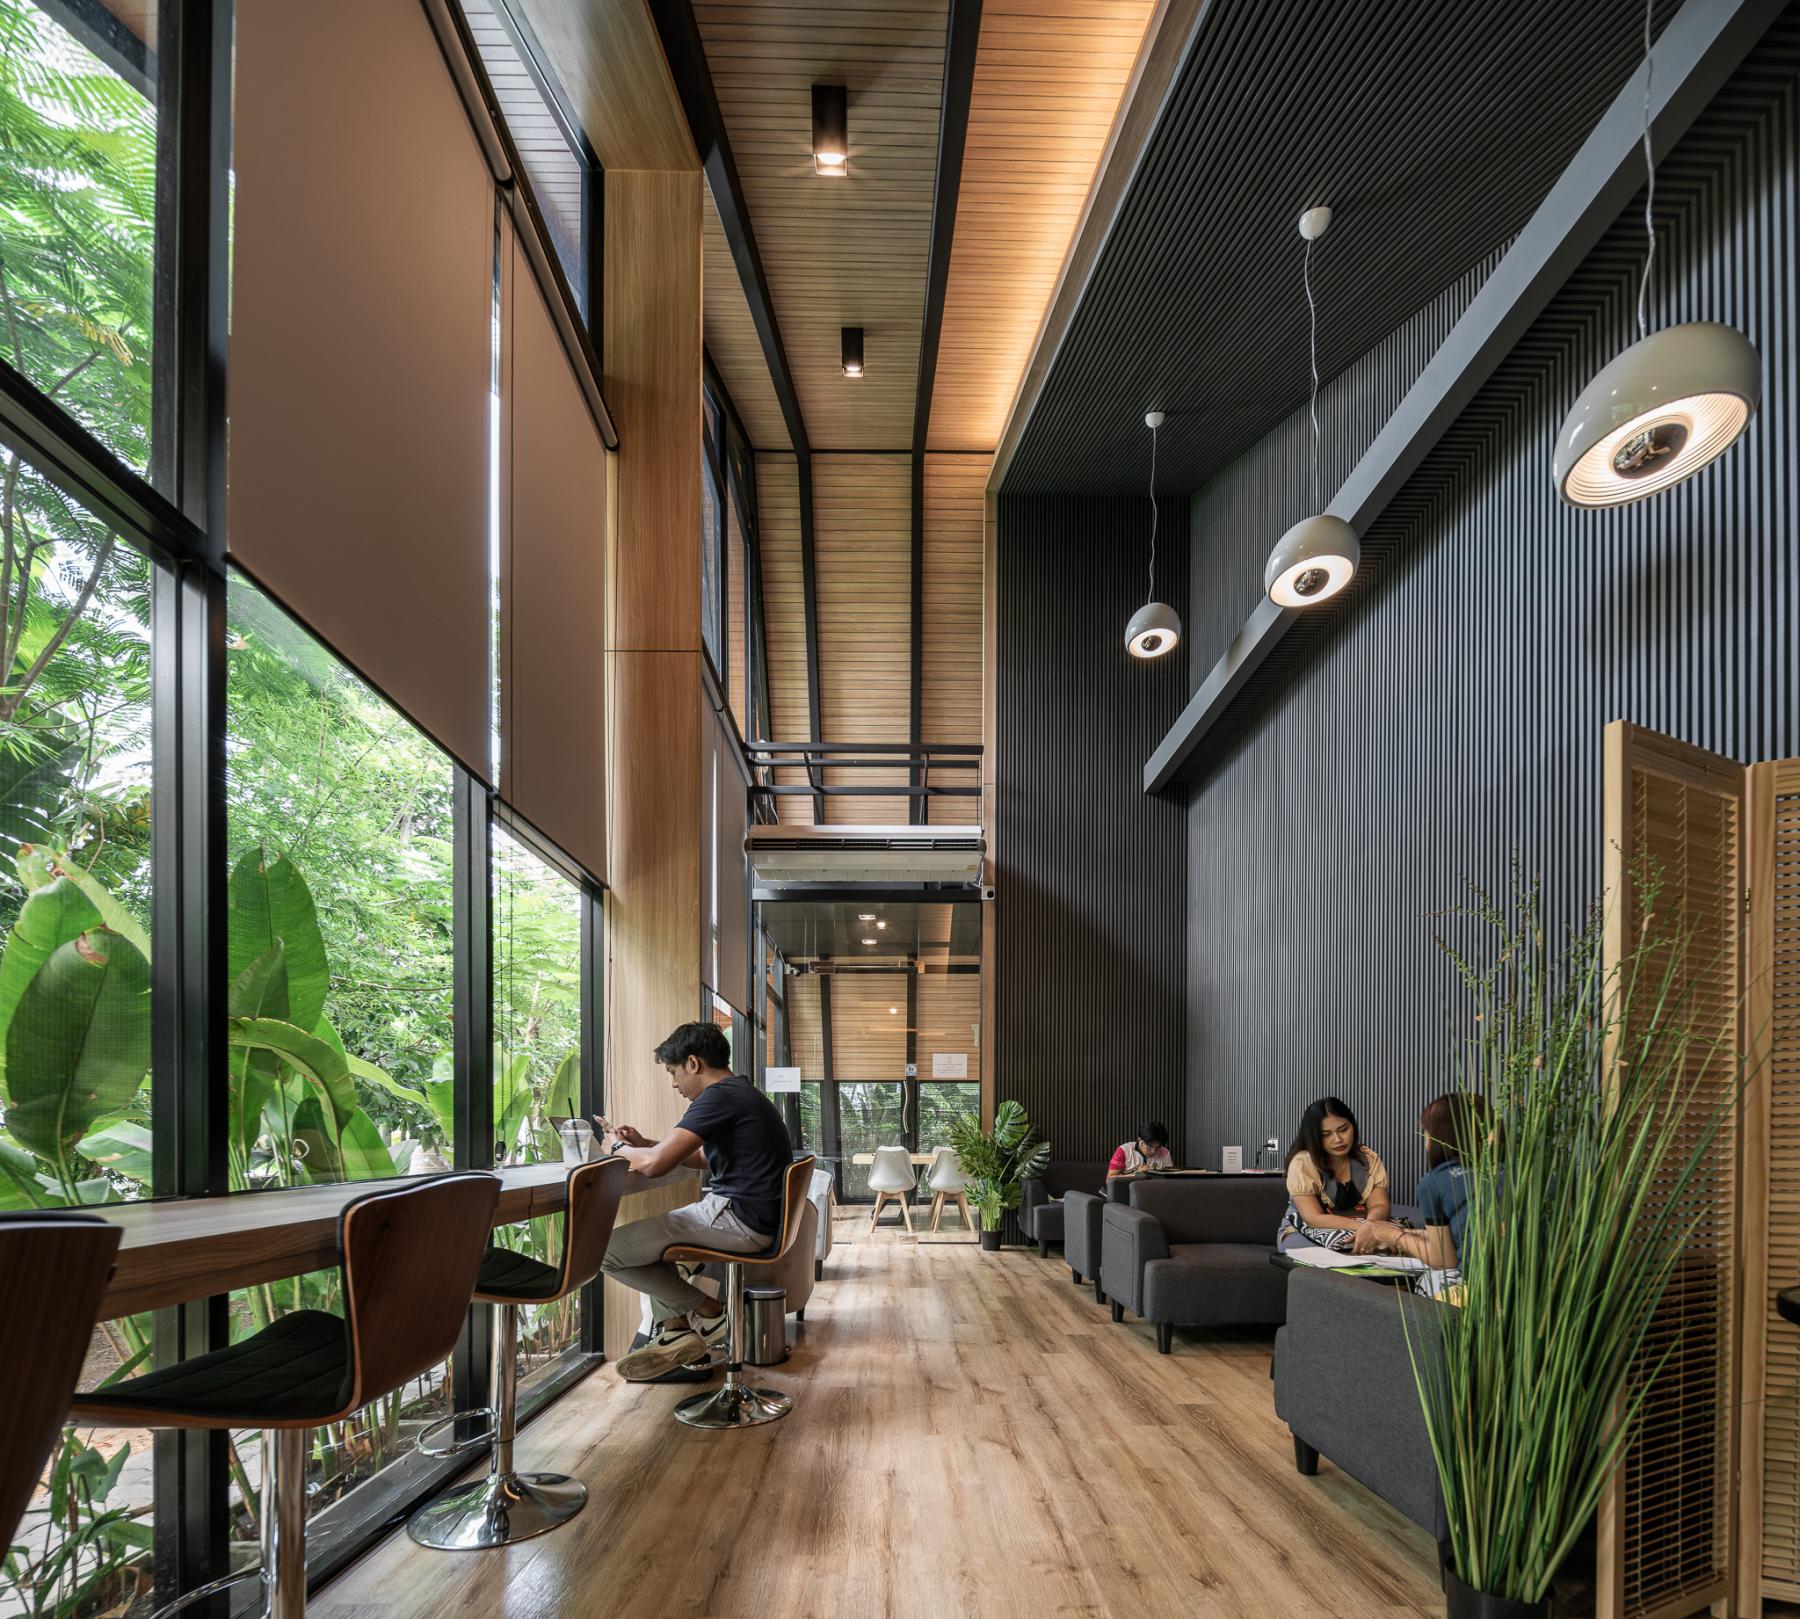 LOG IN CAFE 
Interior design 